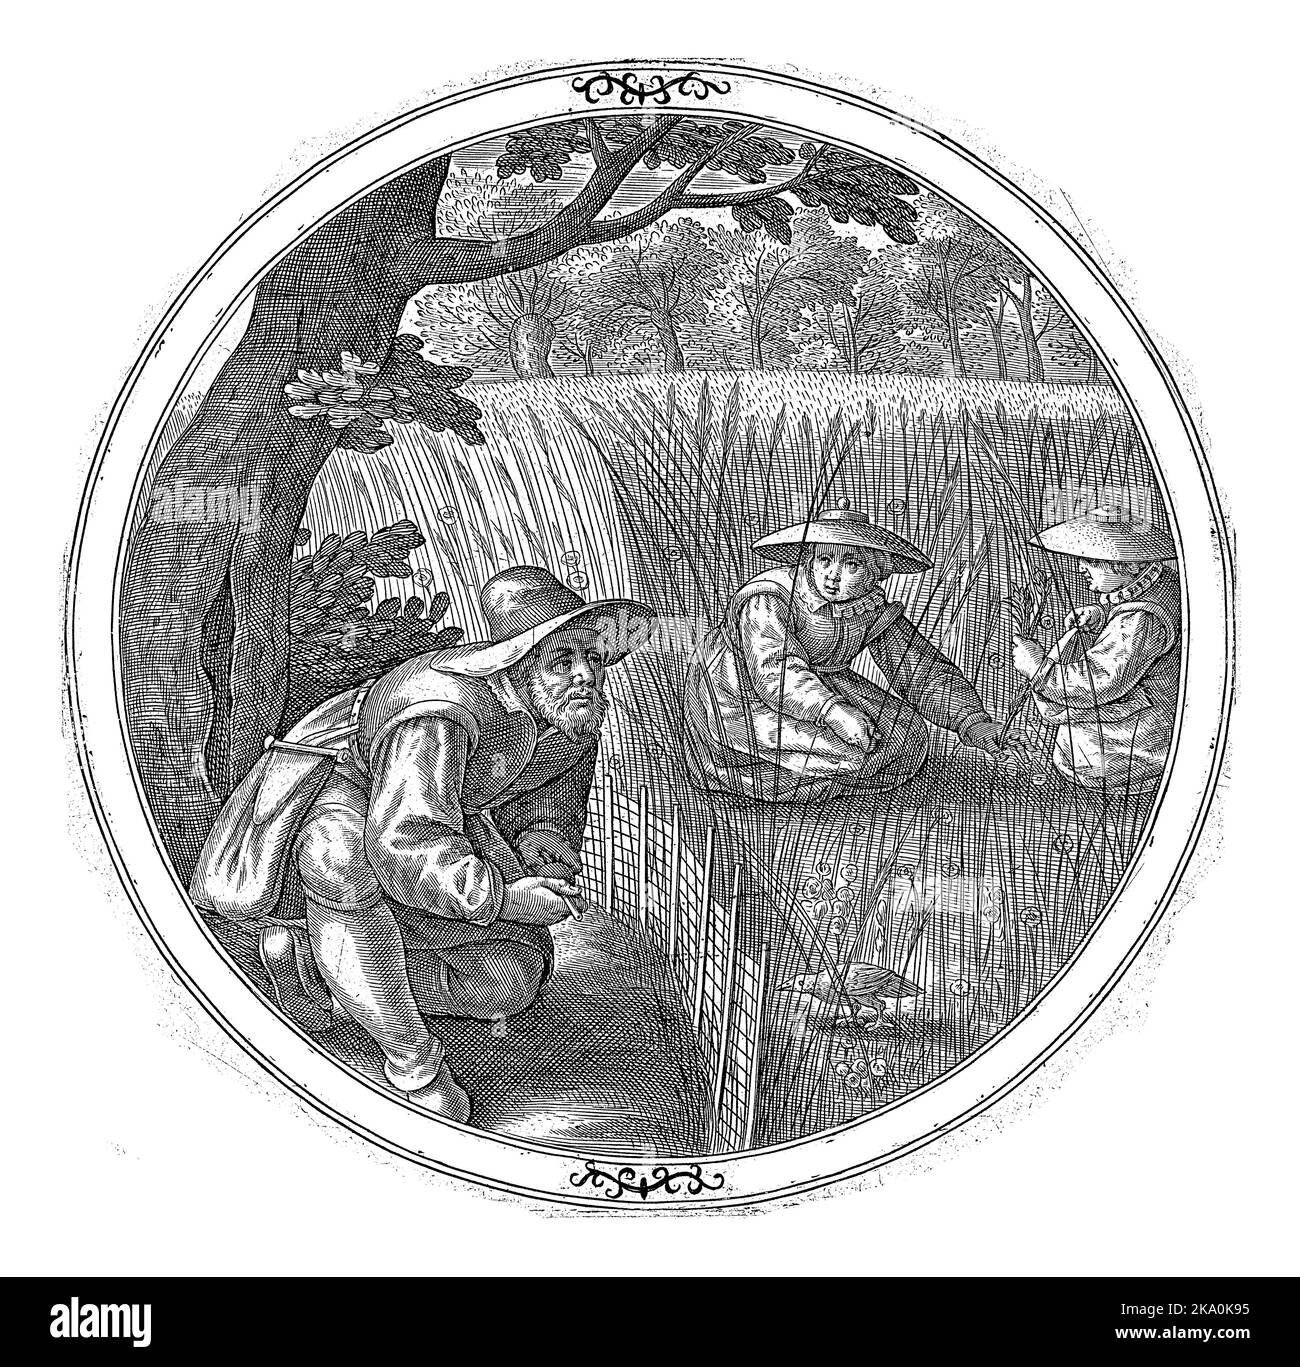 Kwakkelaar, anonym, 1550 - 1610 Ein Vogelfänger sitzt am Rand eines Kornfeldes und lockt Wachteln mit seiner Knochenpfeife. Im Weizenfeld zwei Frauen ein Stockfoto